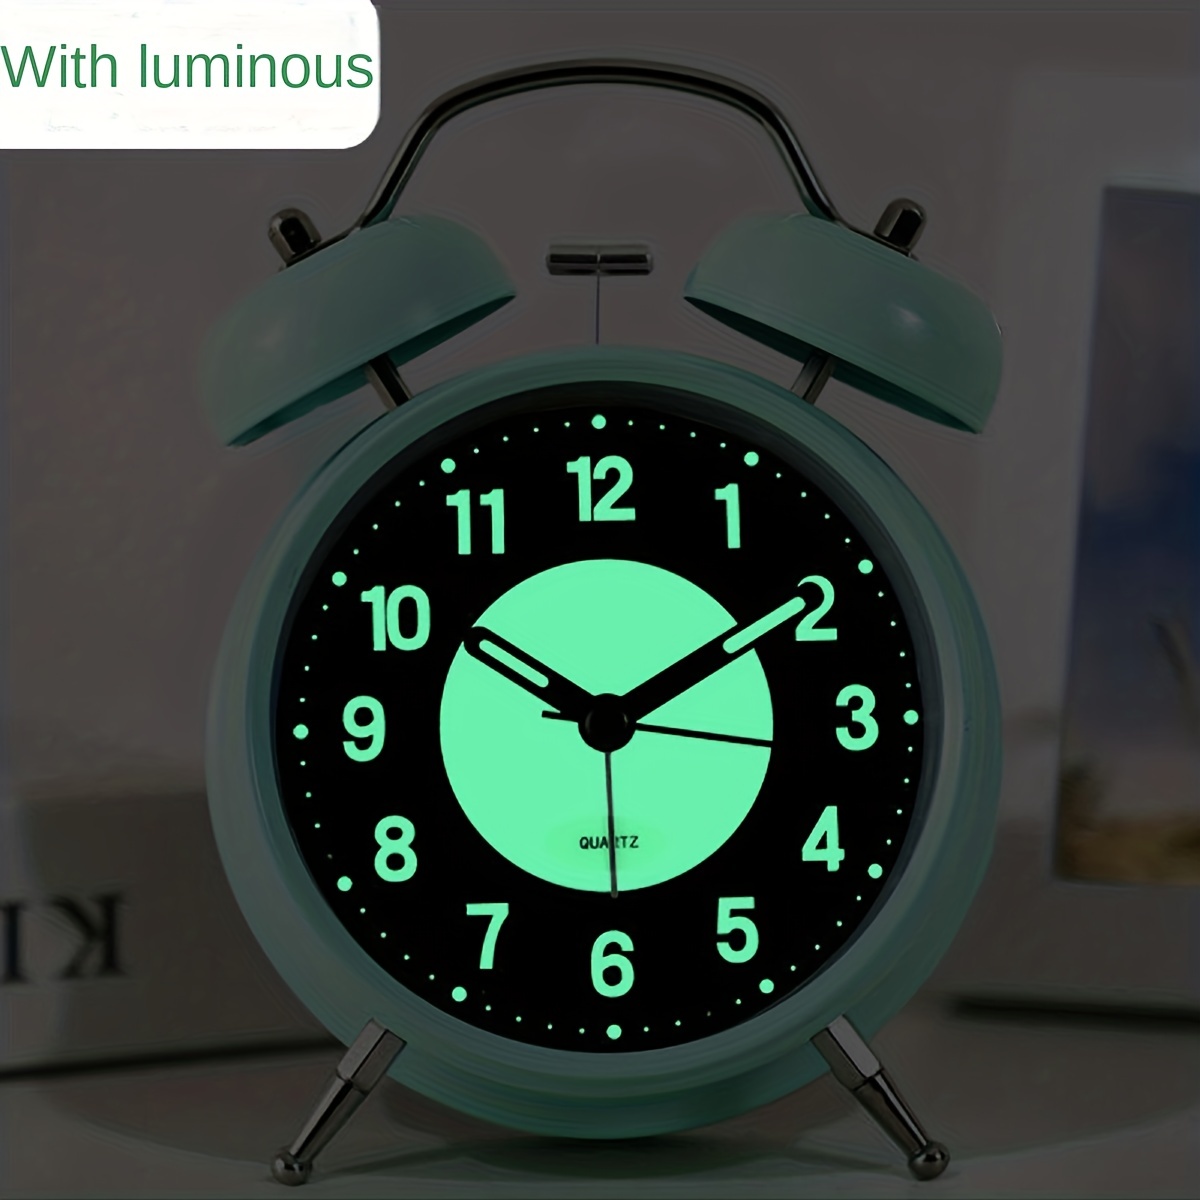 Reloj despertador analógico, retroiluminación retro, bonito diseño